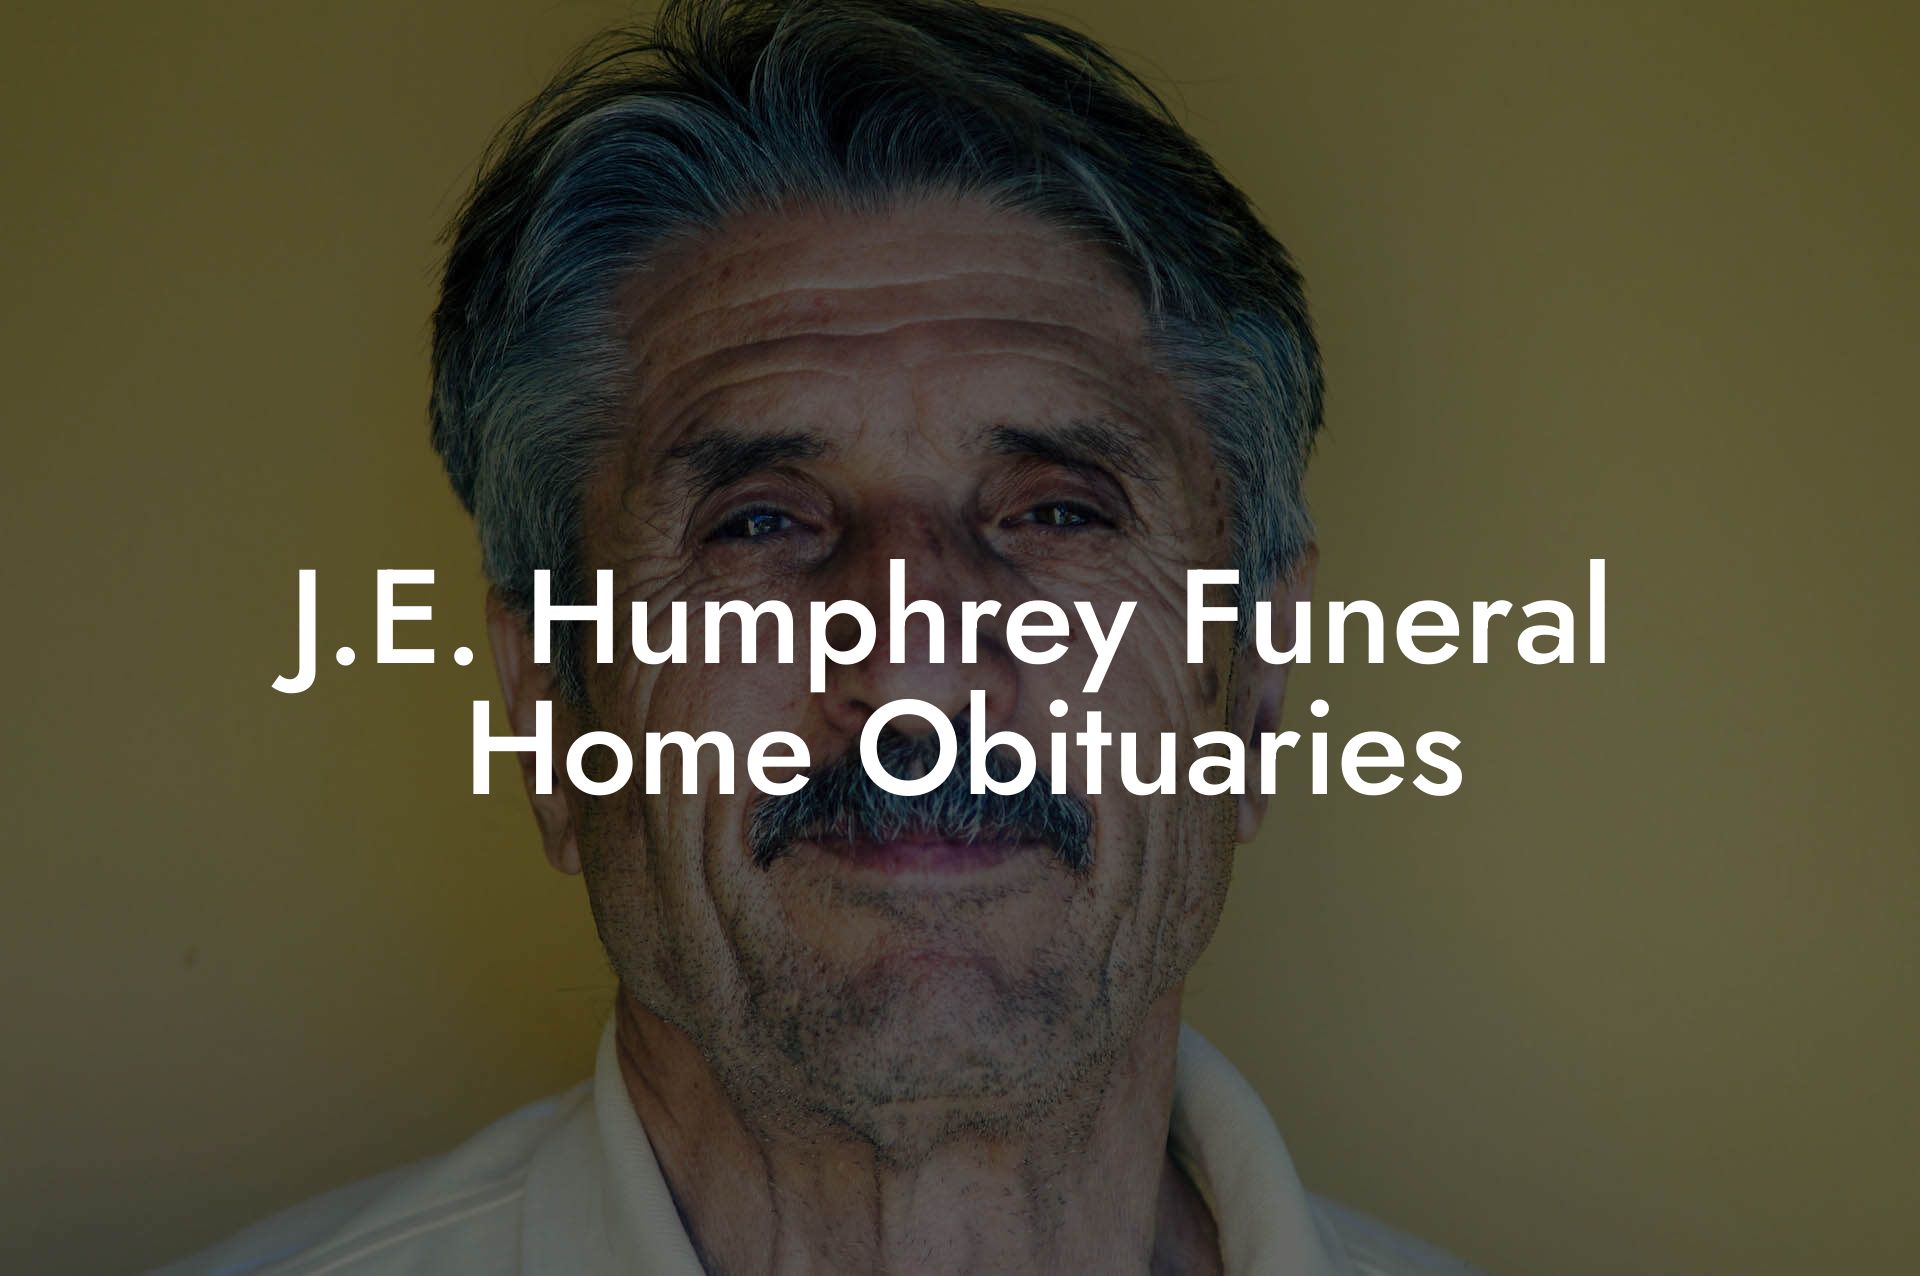 J.E. Humphrey Funeral Home Obituaries